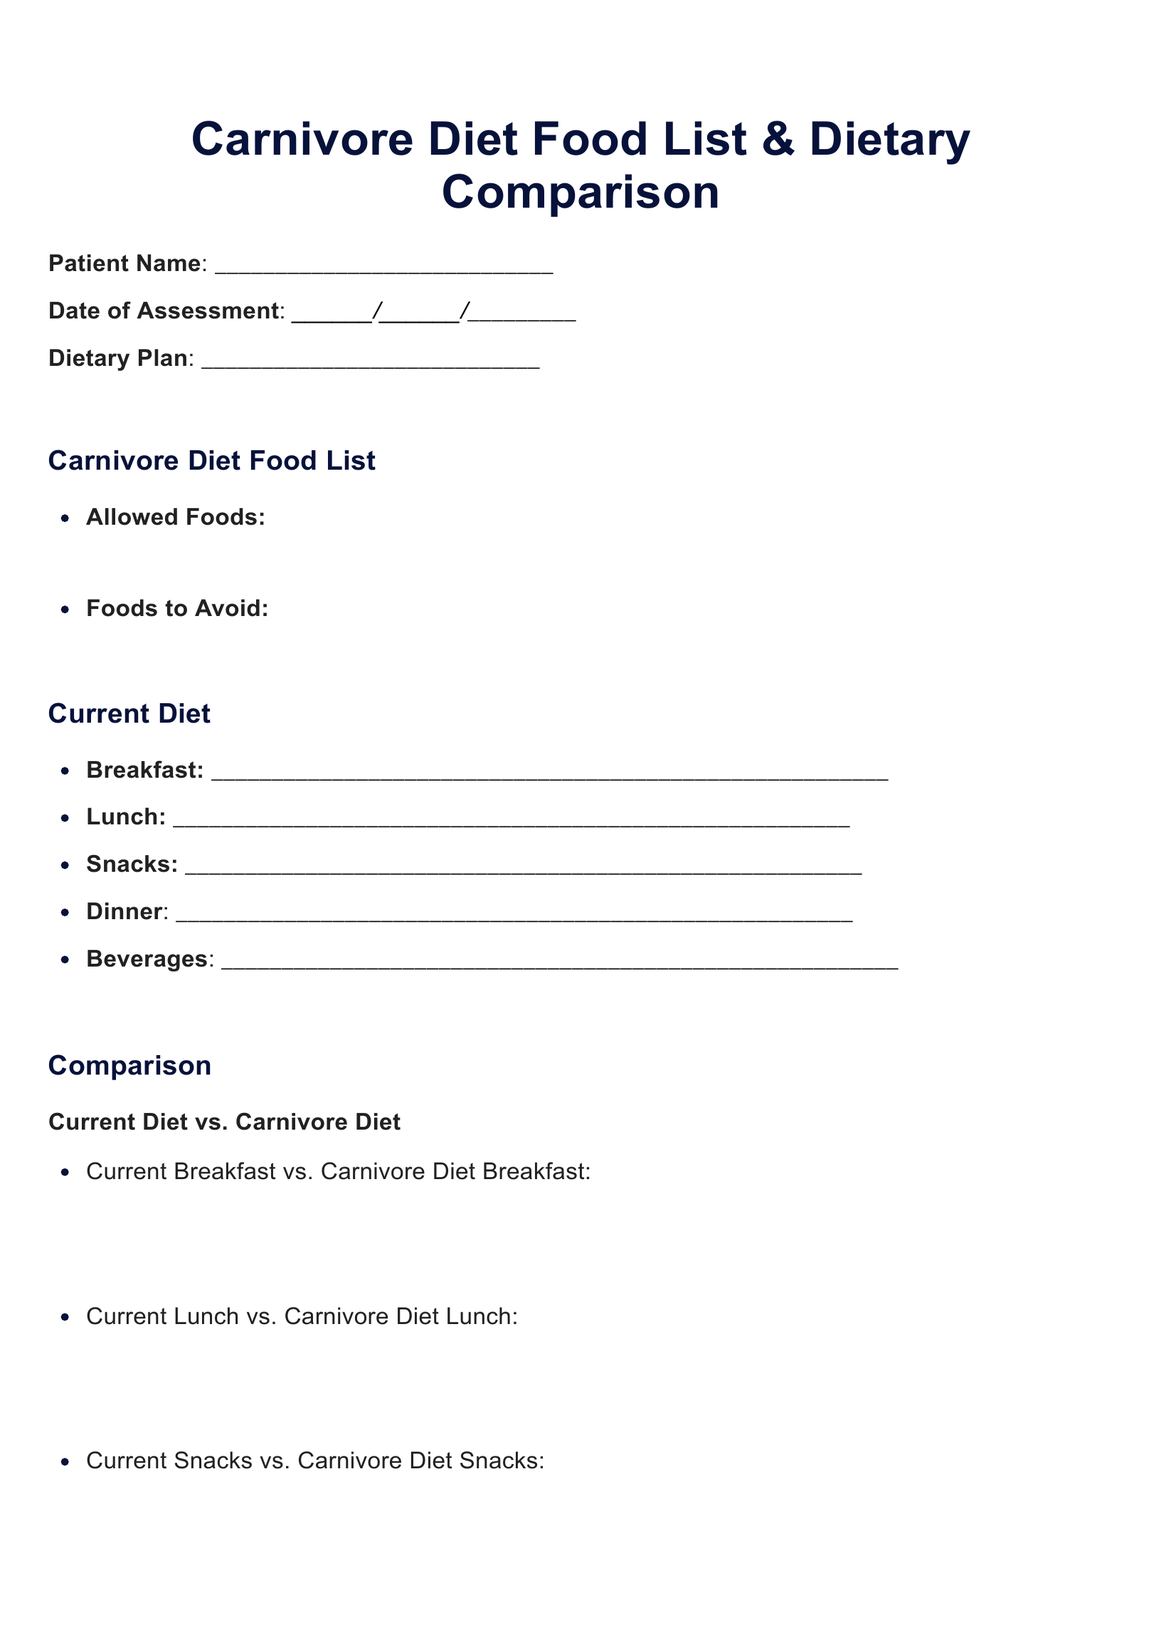 Carnivore Diet Food List PDF Example